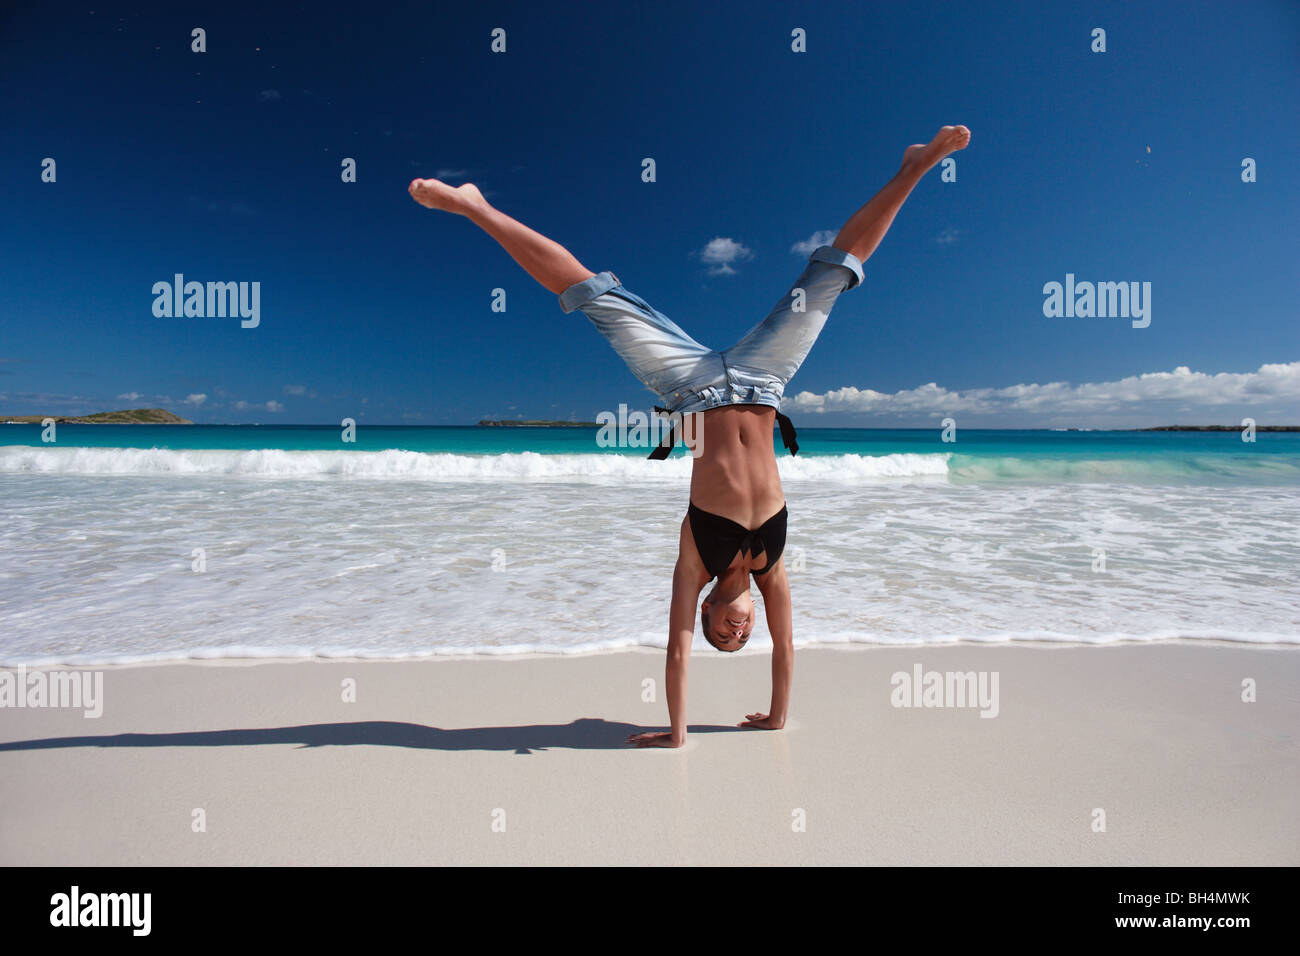 Jeune femme d'une part, se tenir sur une plage tropicale déserte Banque D'Images